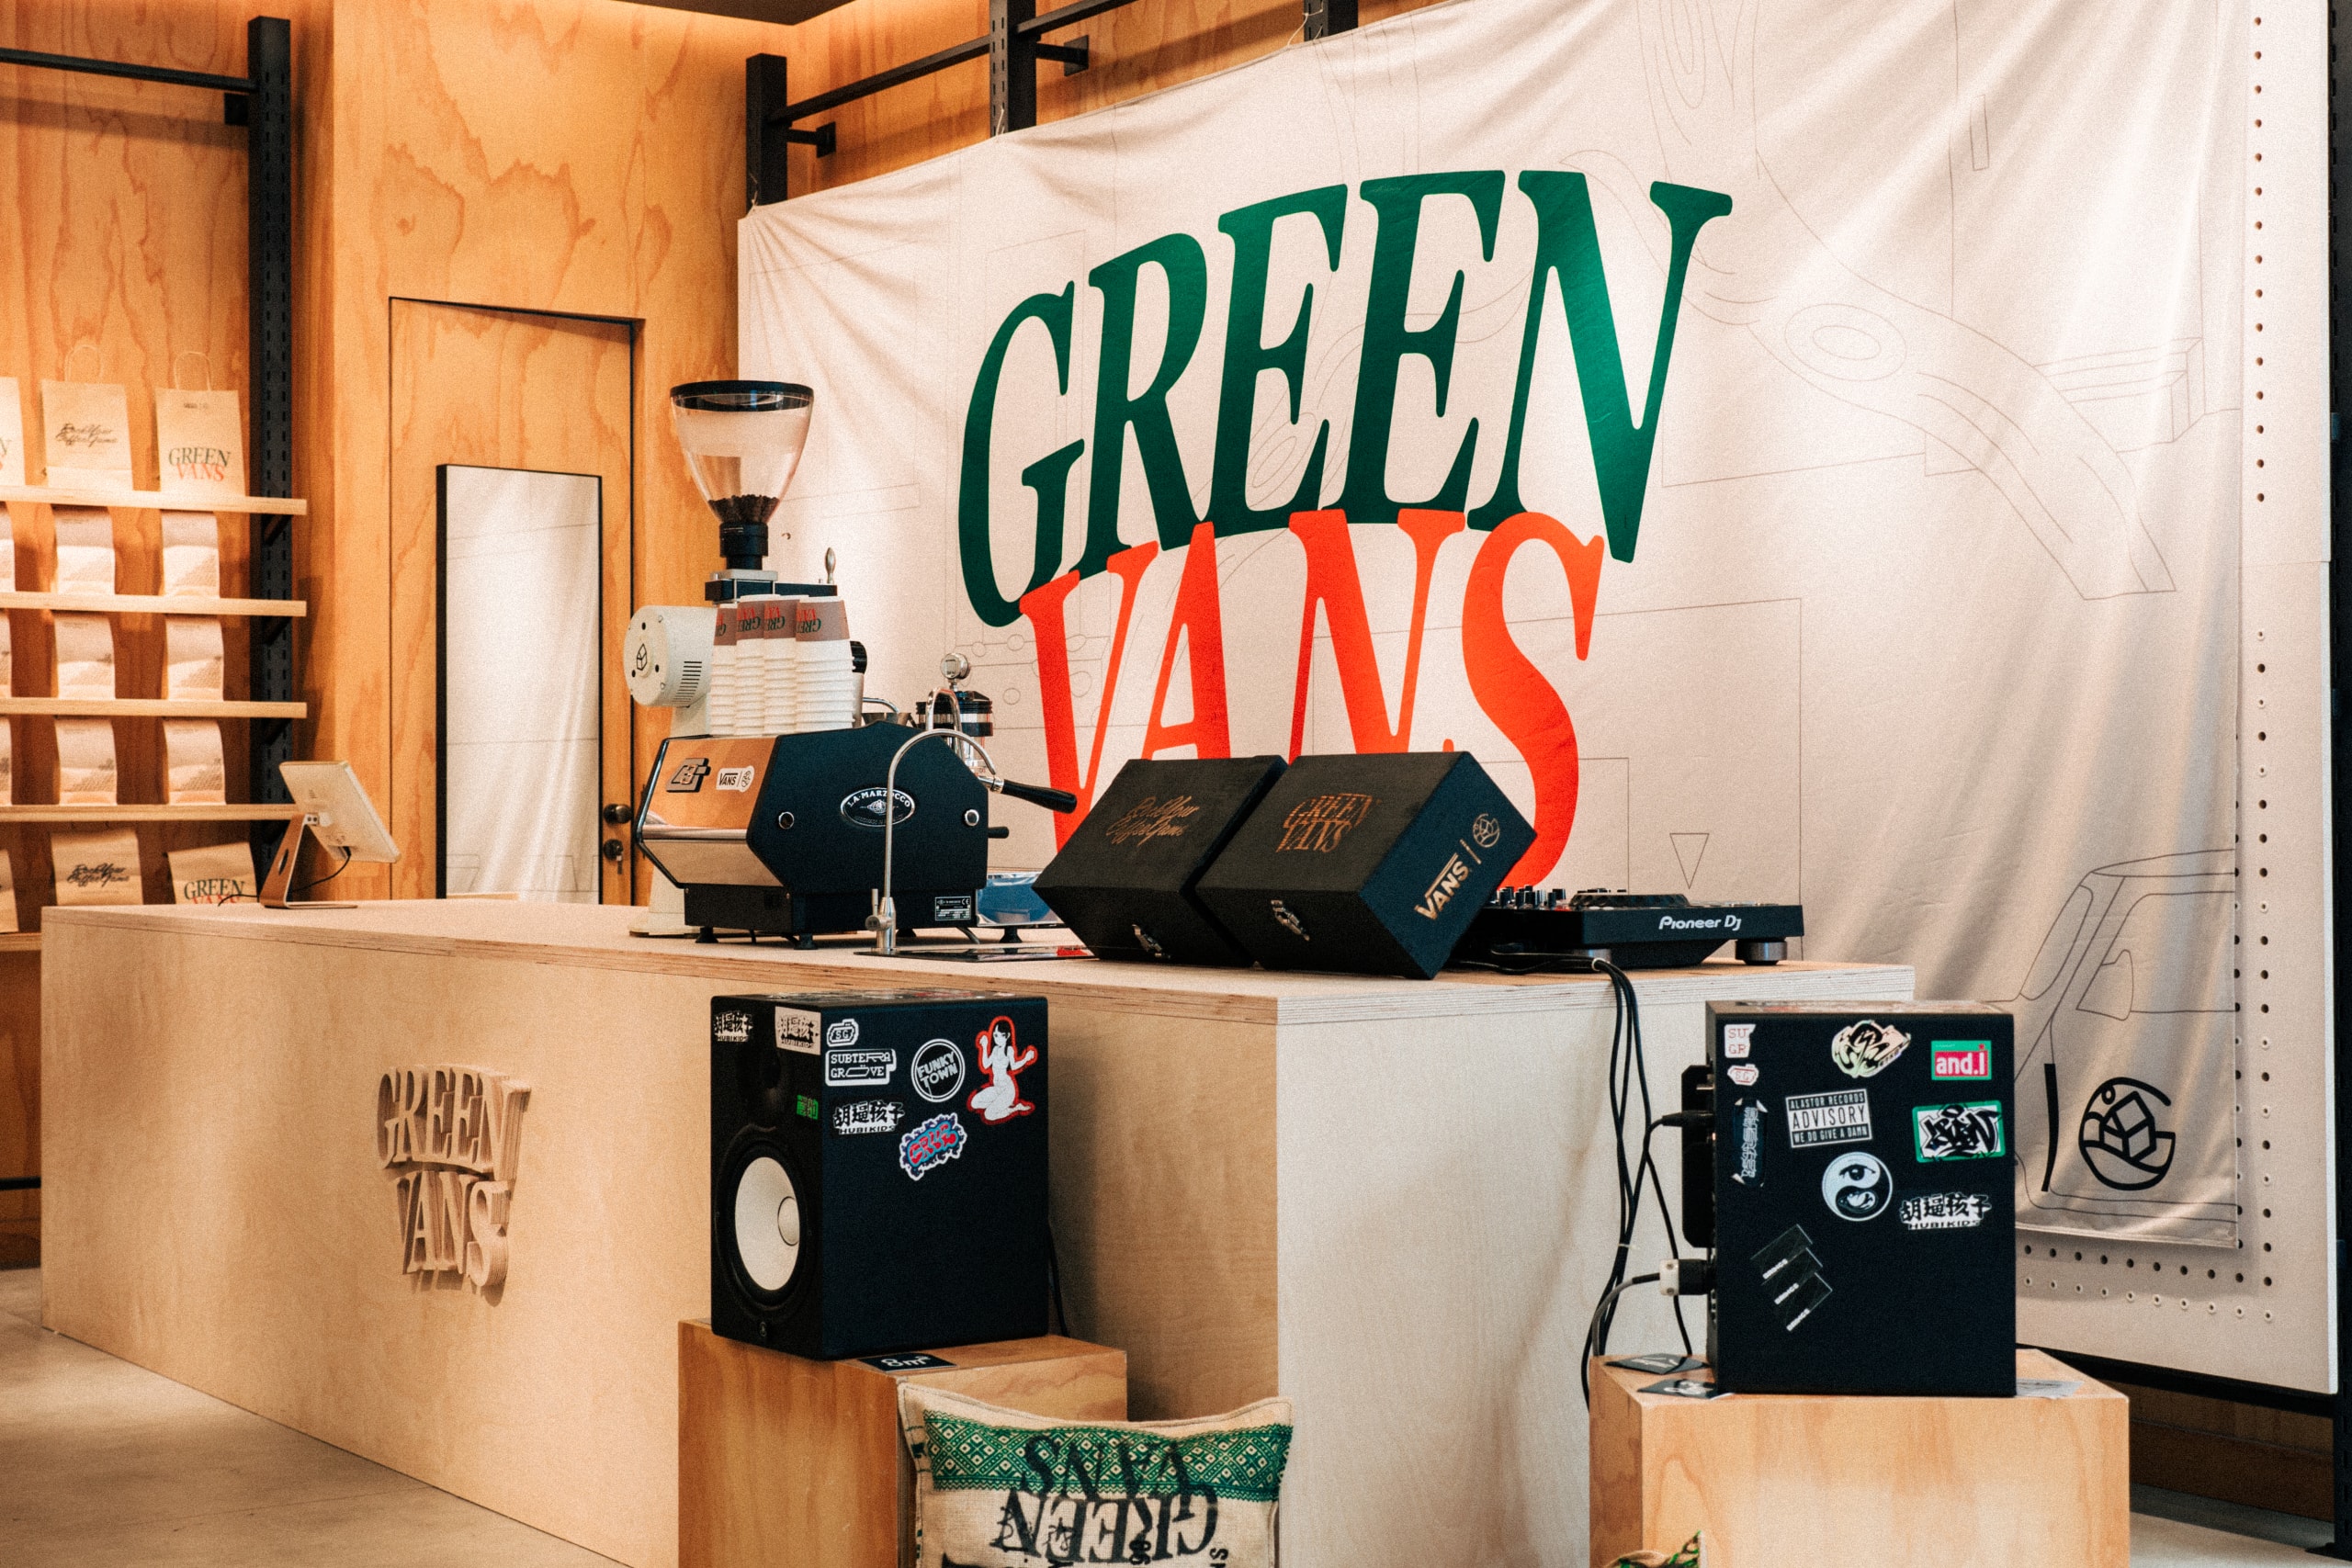 創意單位及咖啡店 GREEN HOUSE 攜手 VANS 開設「GREEN VANS 限時咖啡店」